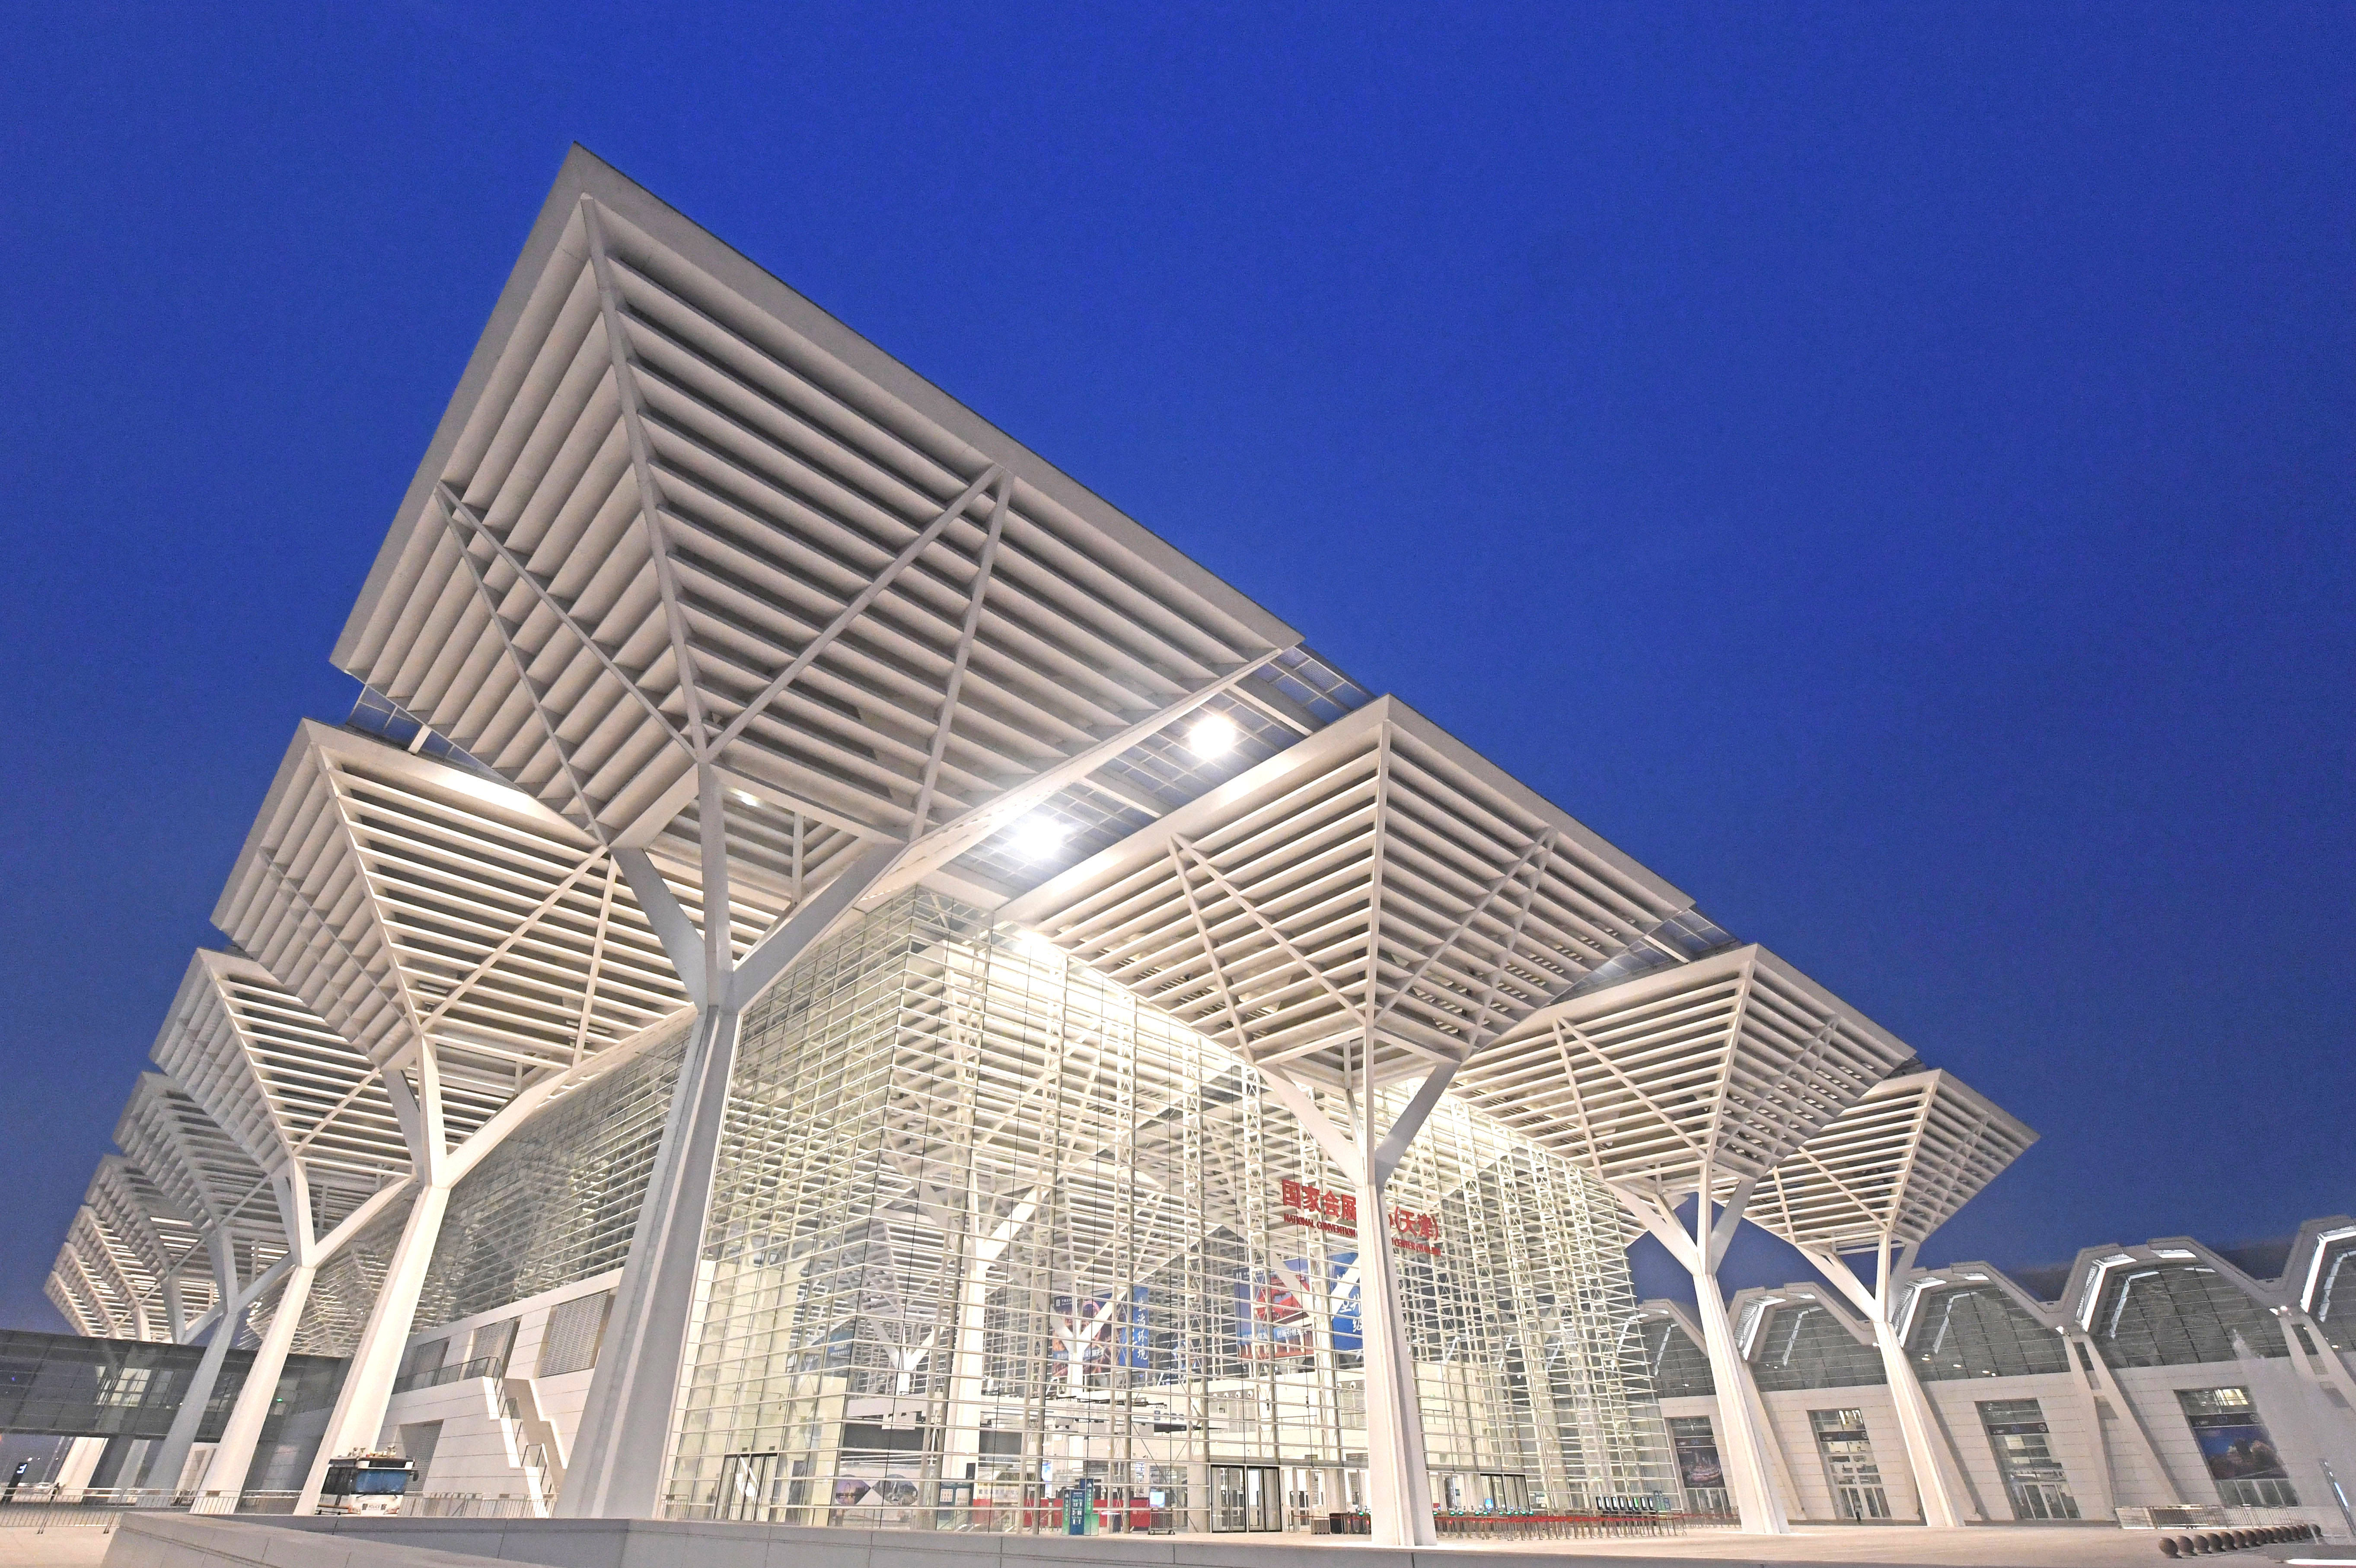 6月24日,国家会展中心(天津)一期展馆迎来首展——中国建筑科学大会